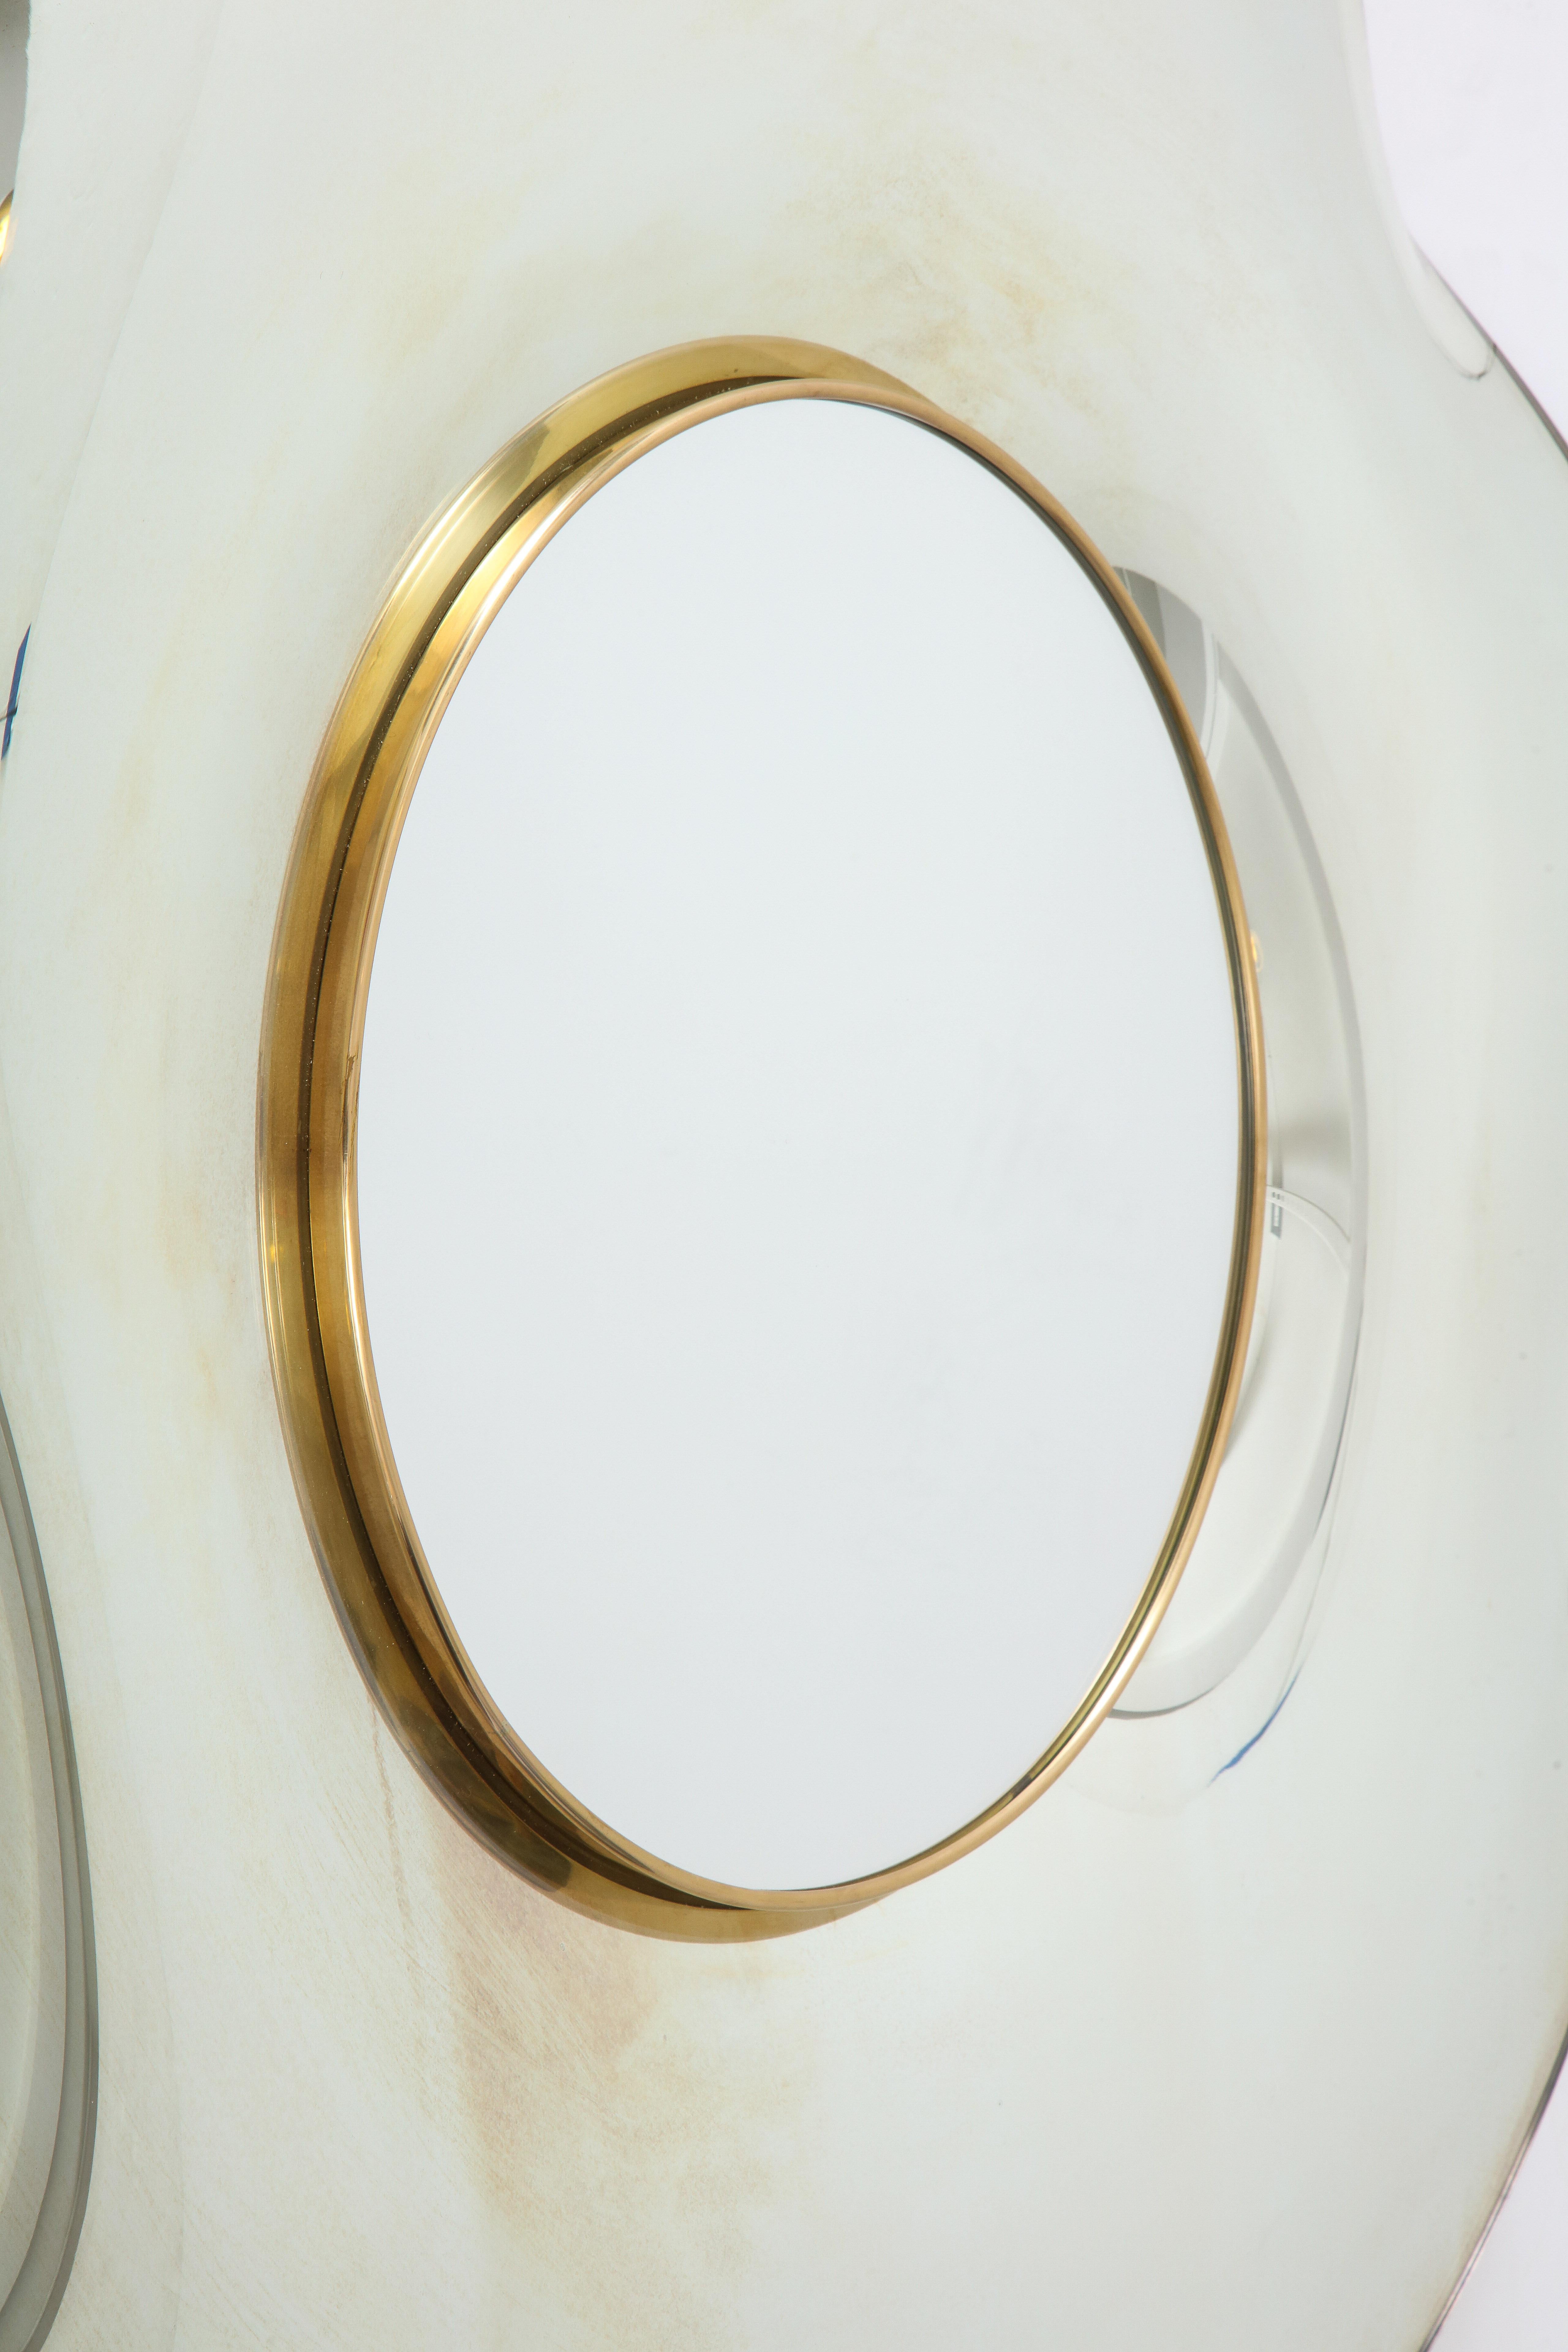 Contemporary Wave Italian Mirror by Ghiró Studio